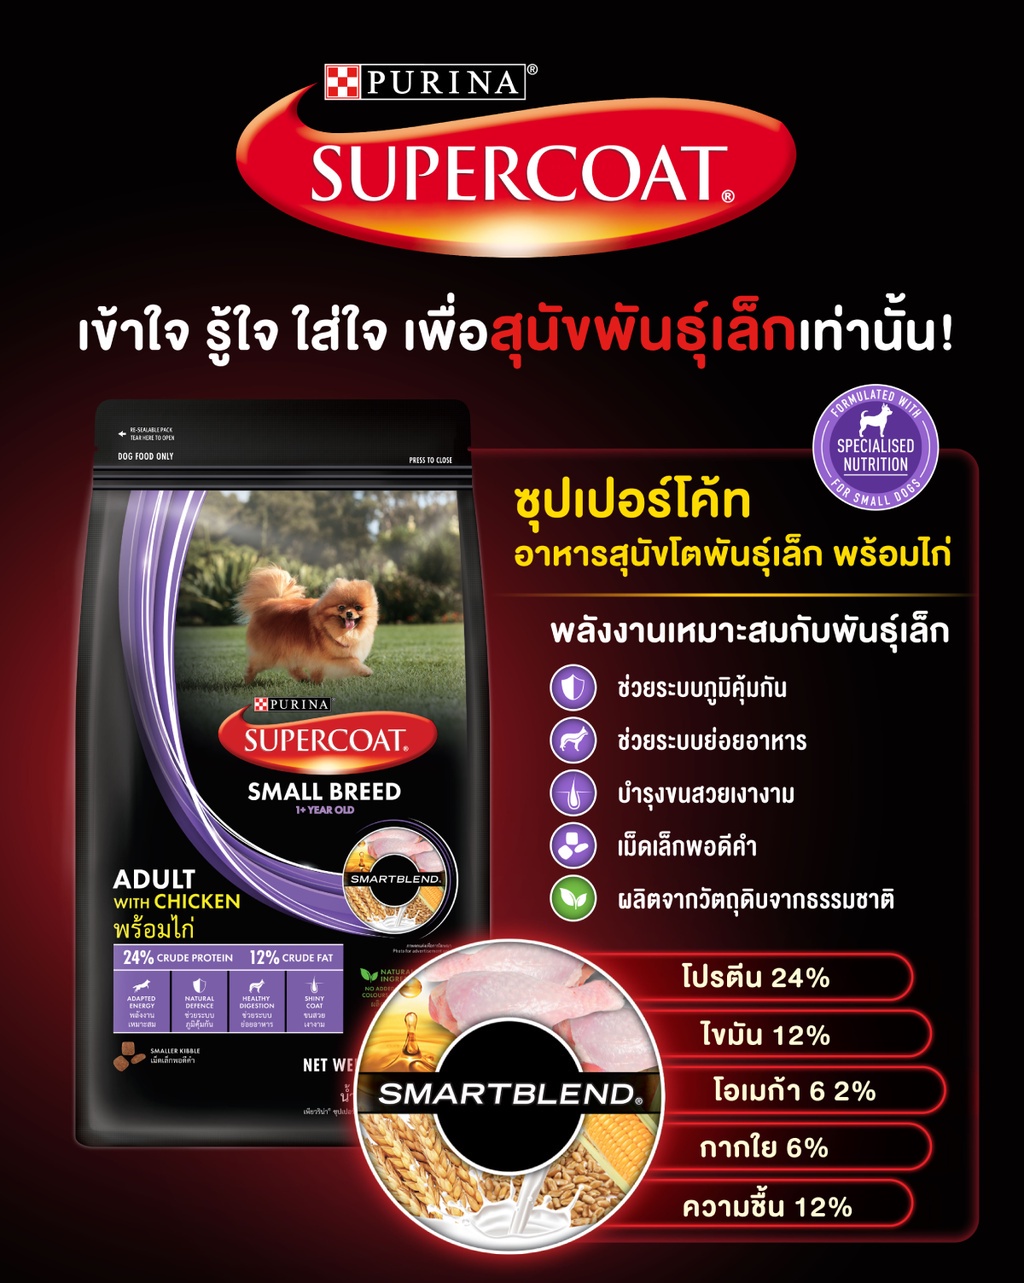 เกี่ยวกับสินค้า SUPERCOAT ซุปเปอร์โค้ท อาหารสุนัข แบบเม็ด สูตรสุนัขโต รสเนื้อวัว ถุง 10 กก.